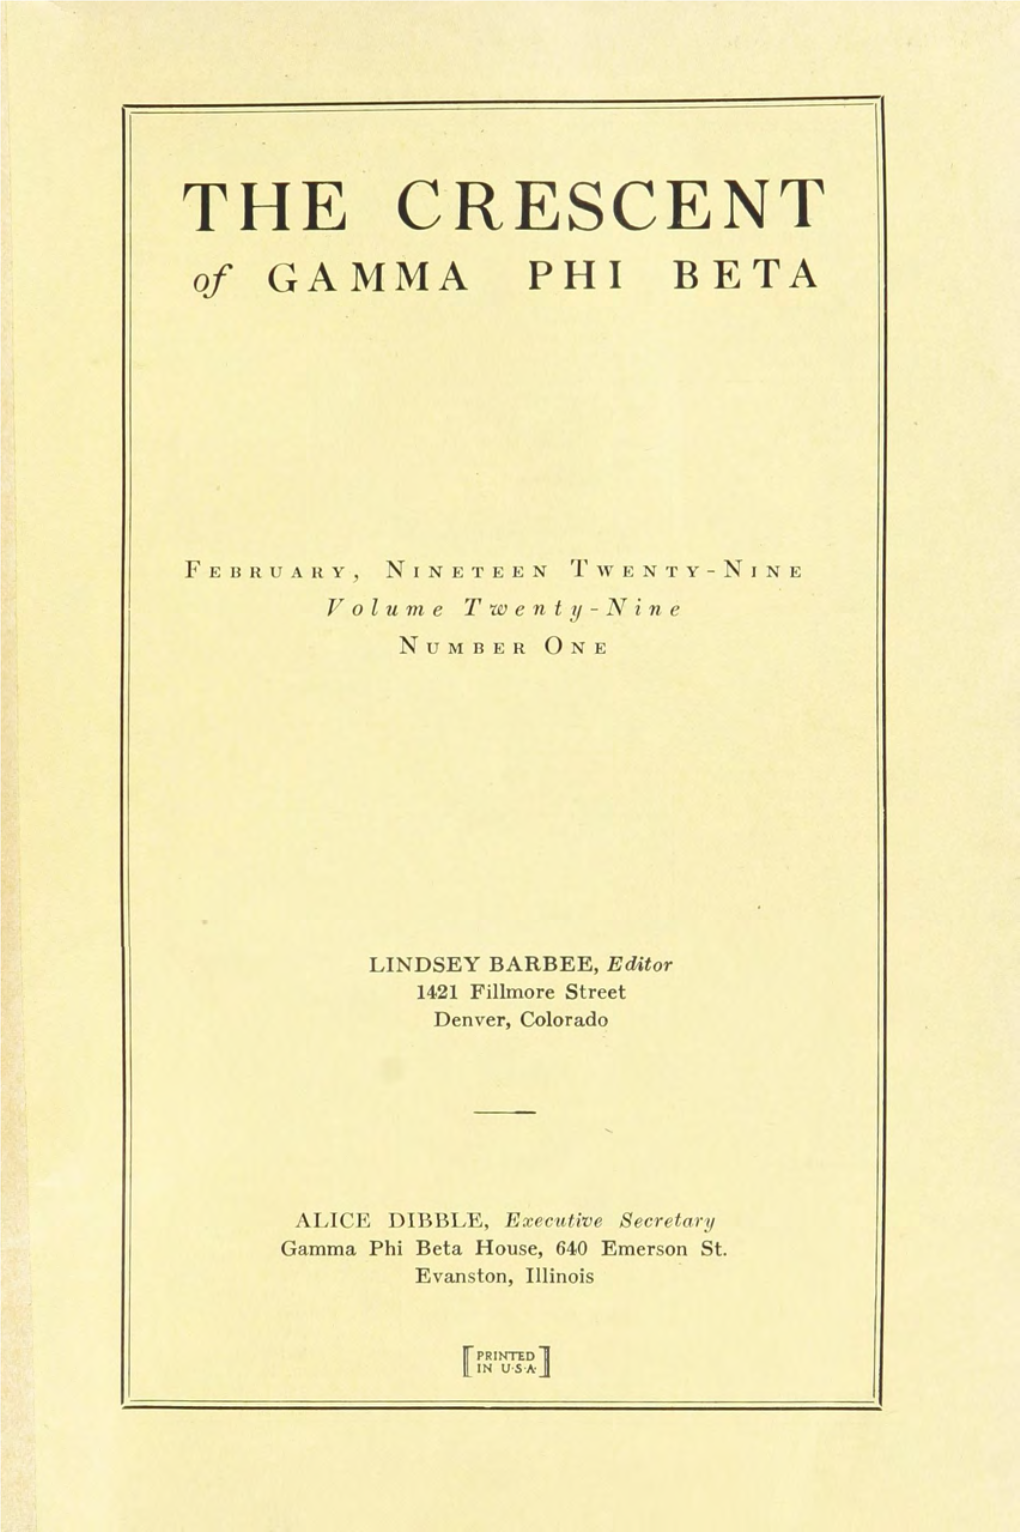 THE CRESCENT of GAMMA PHI BETA